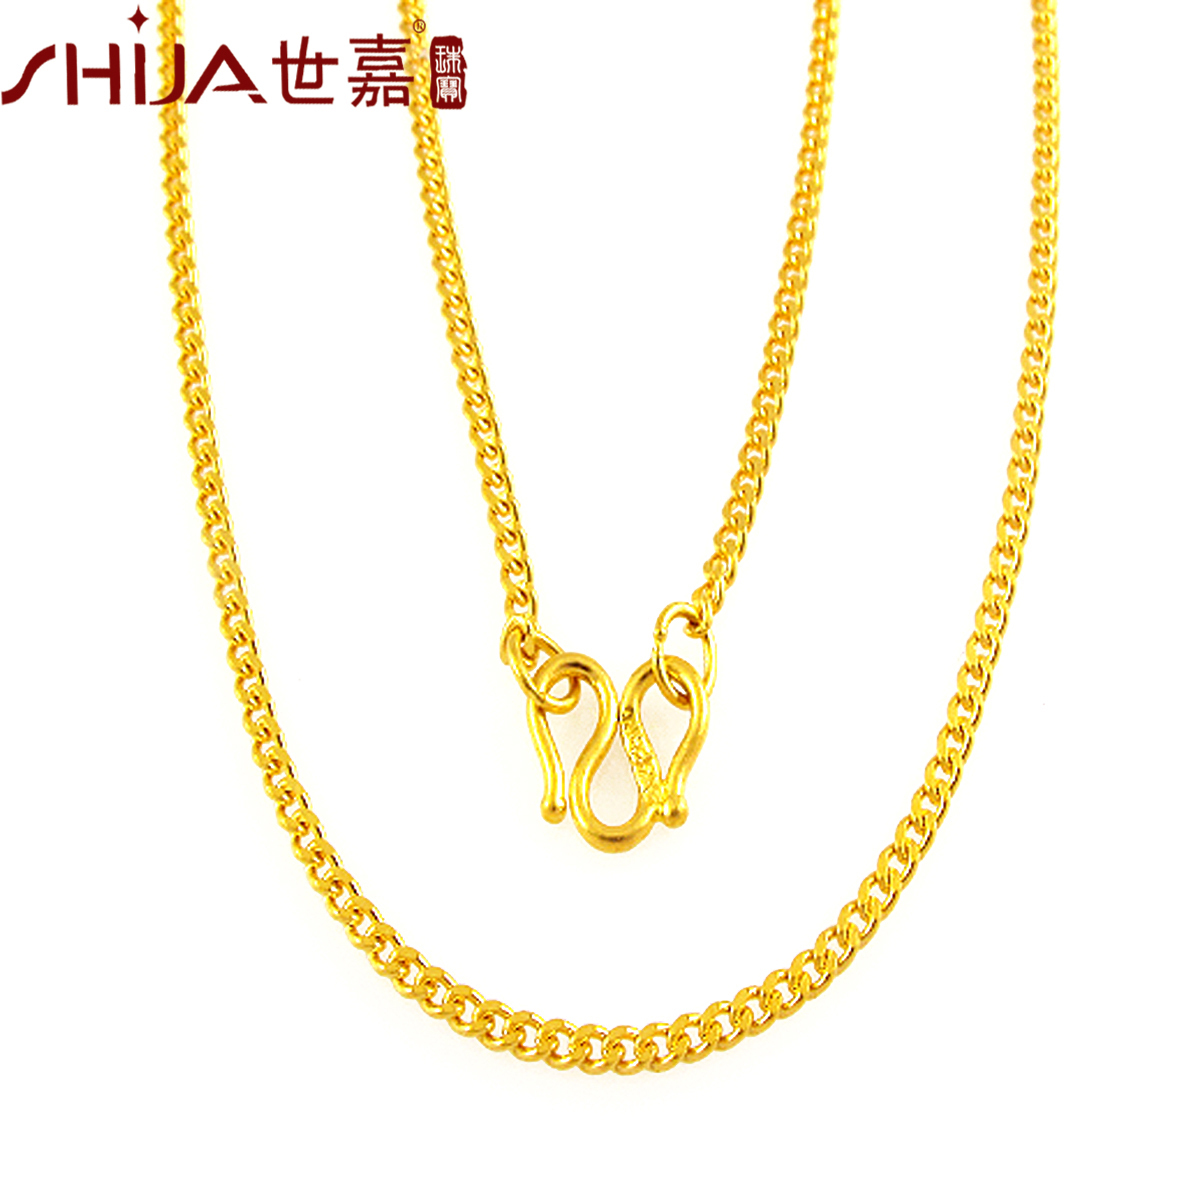 厂家直批18K金项链可调节肖邦链彩金黄金玫瑰金项链吊坠配链au750-阿里巴巴